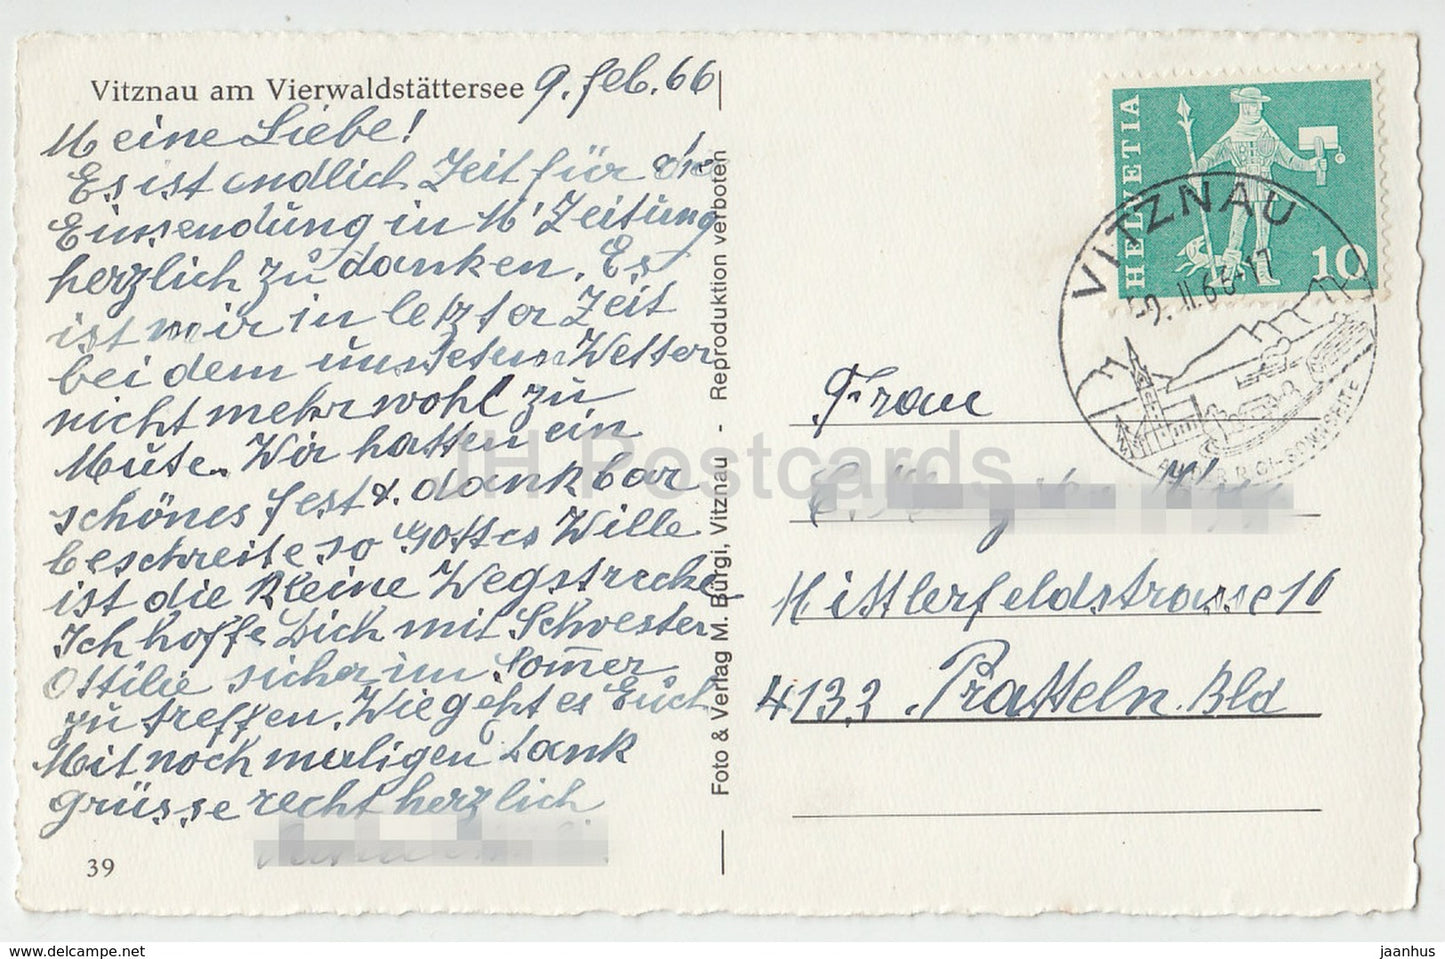 Vitznau am Vierwaldstättersee – Schweiz – 39 – 1966 – gebraucht